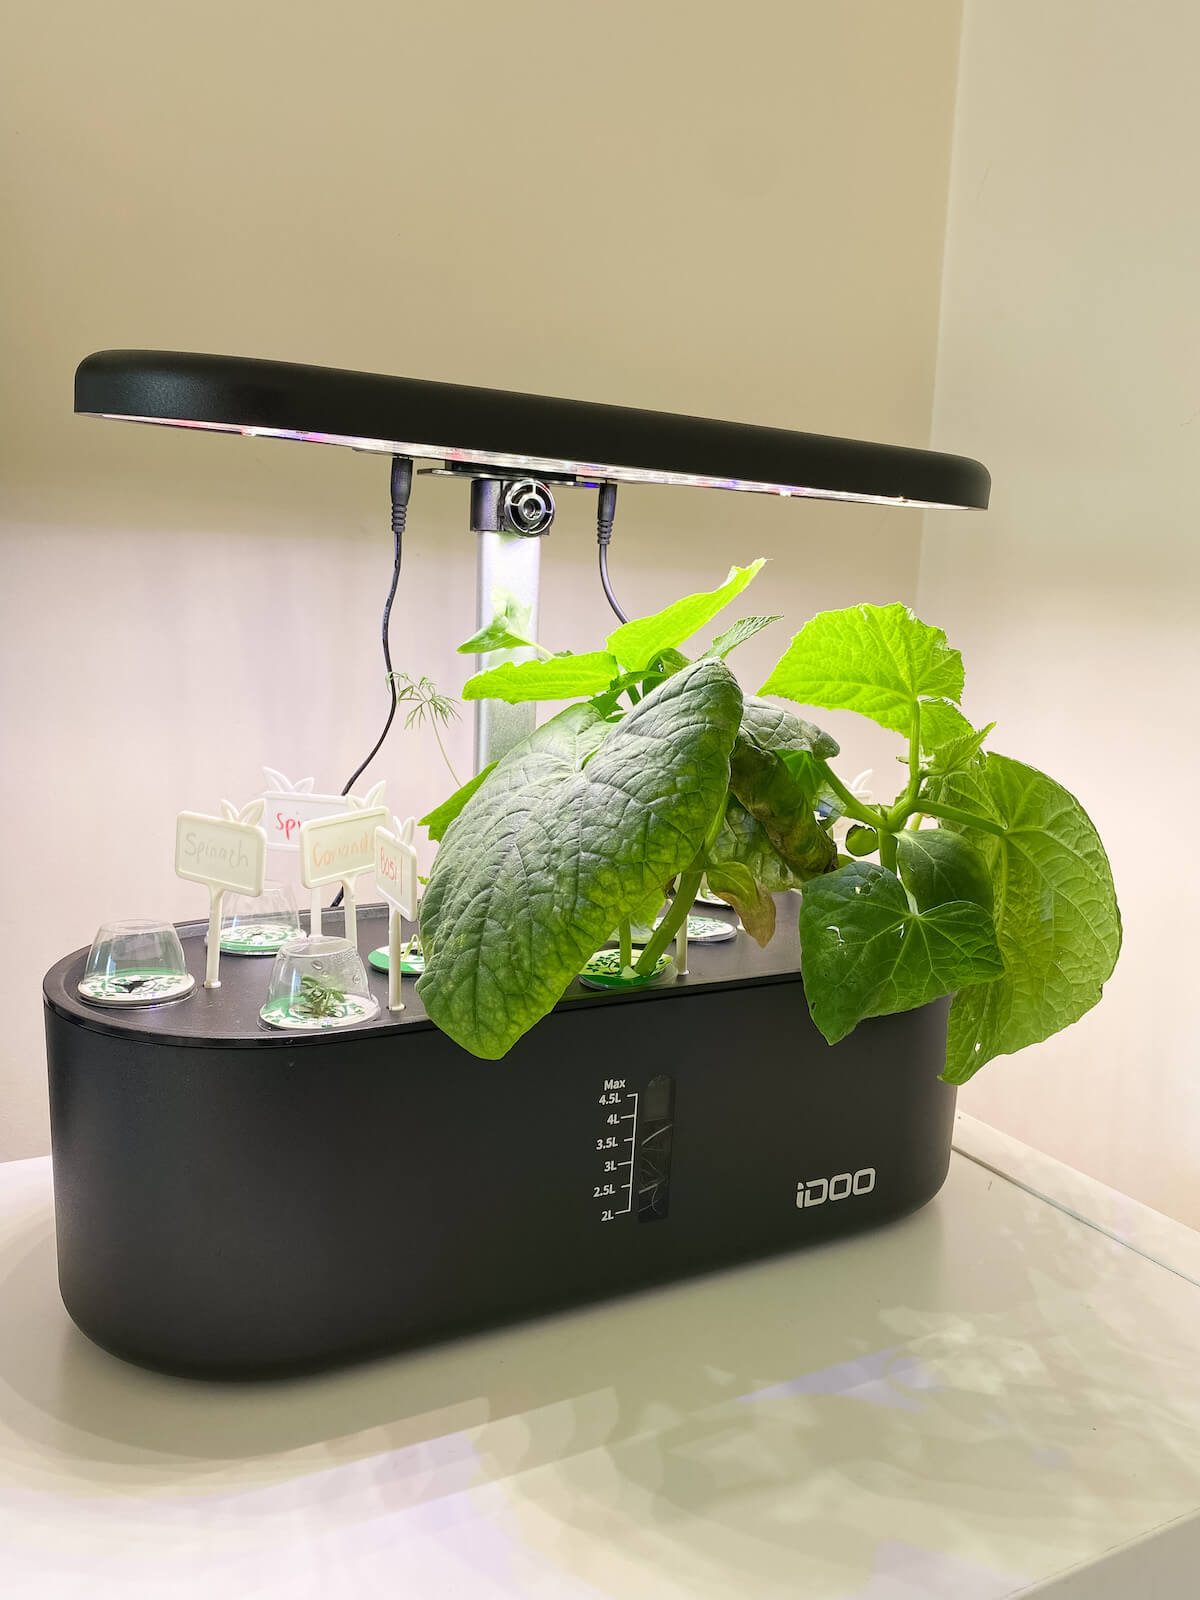 Idoo hydroponics indoor garden